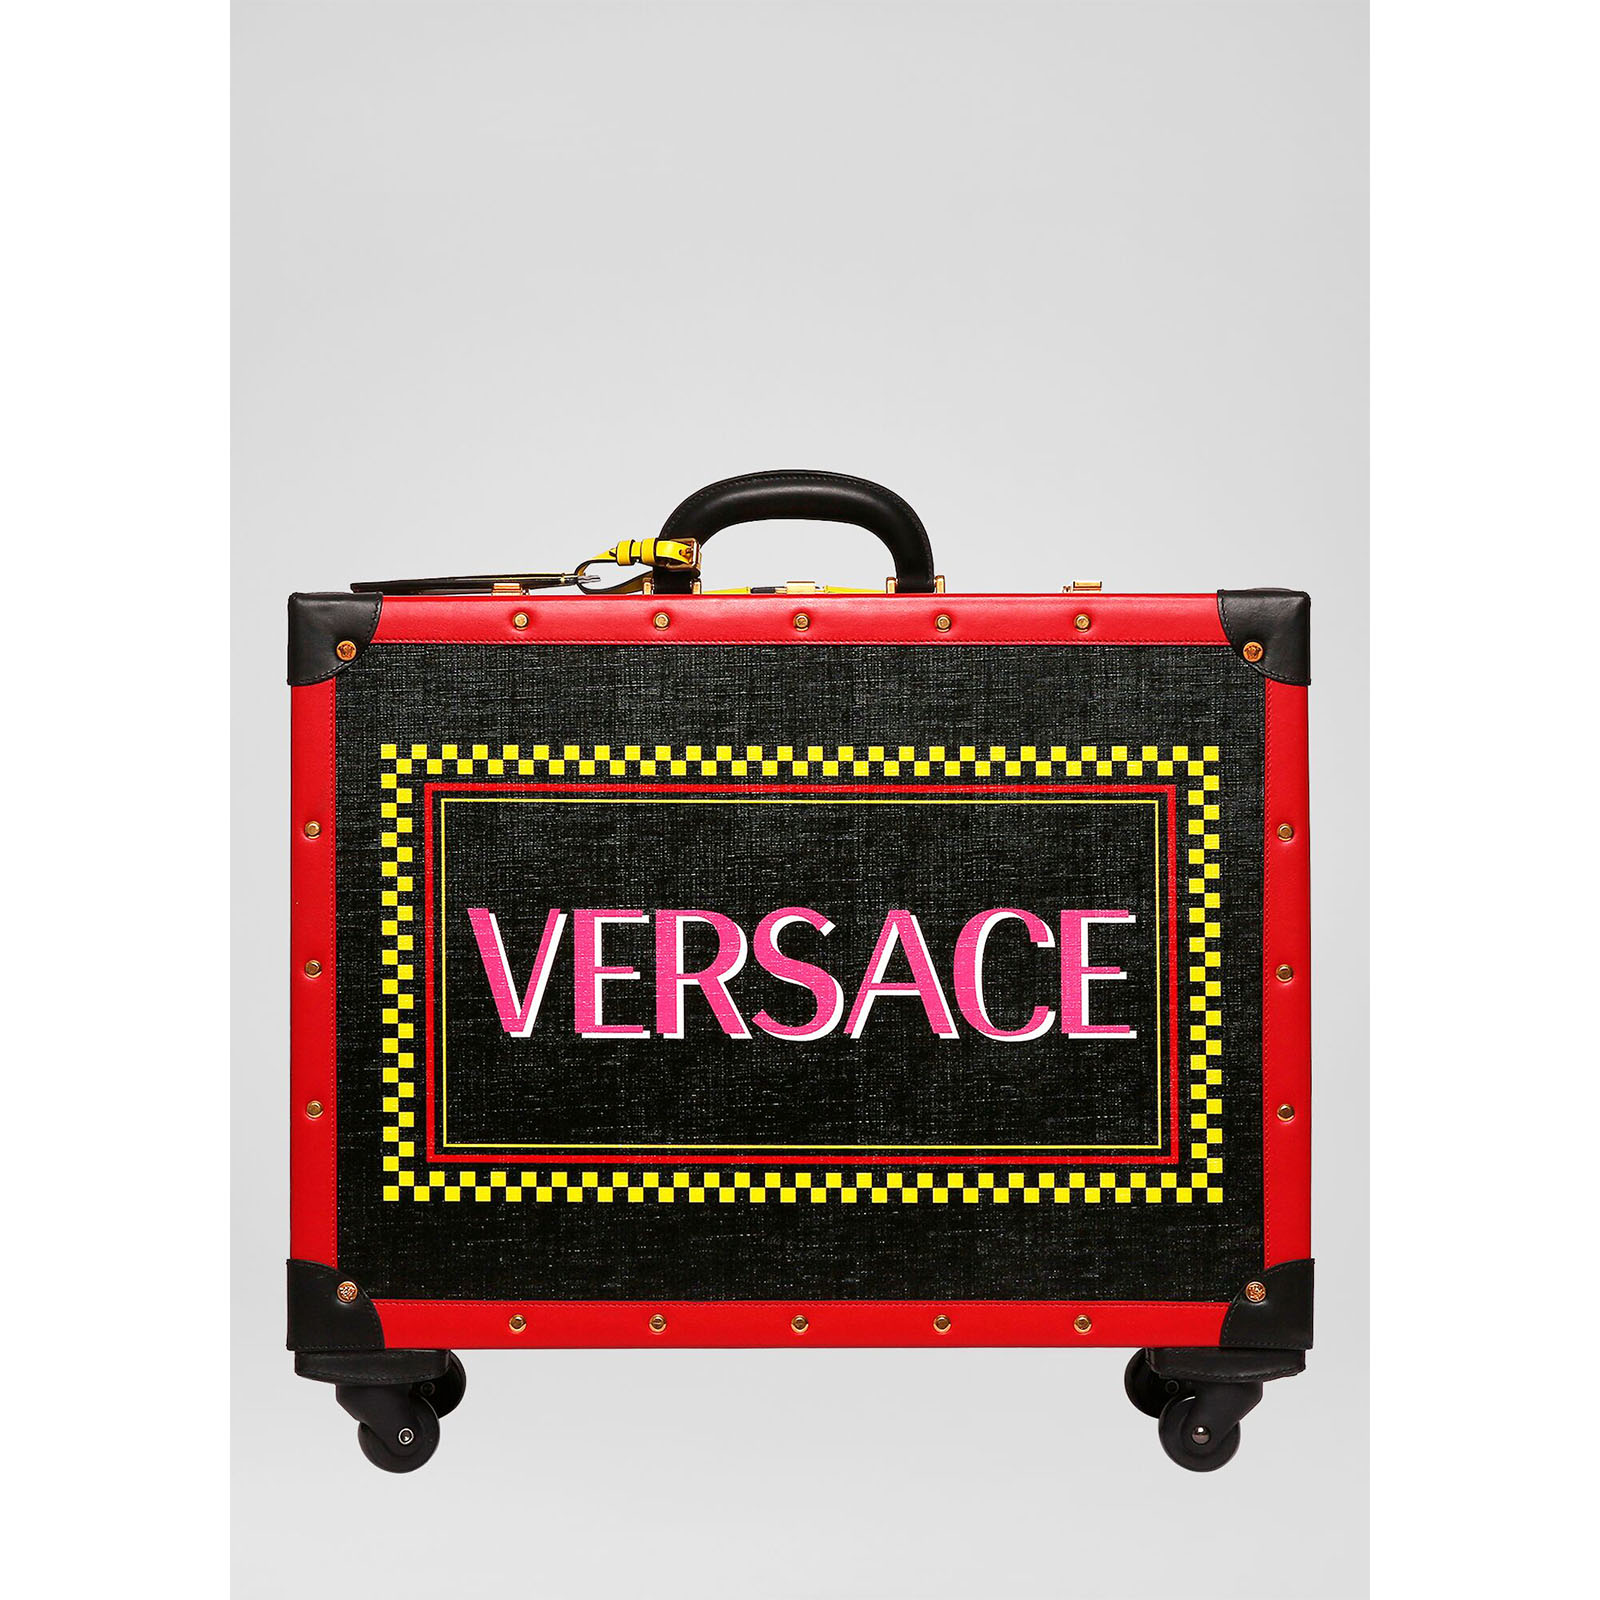 范思哲/Versace 90年代复古风LOGO小号手提箱